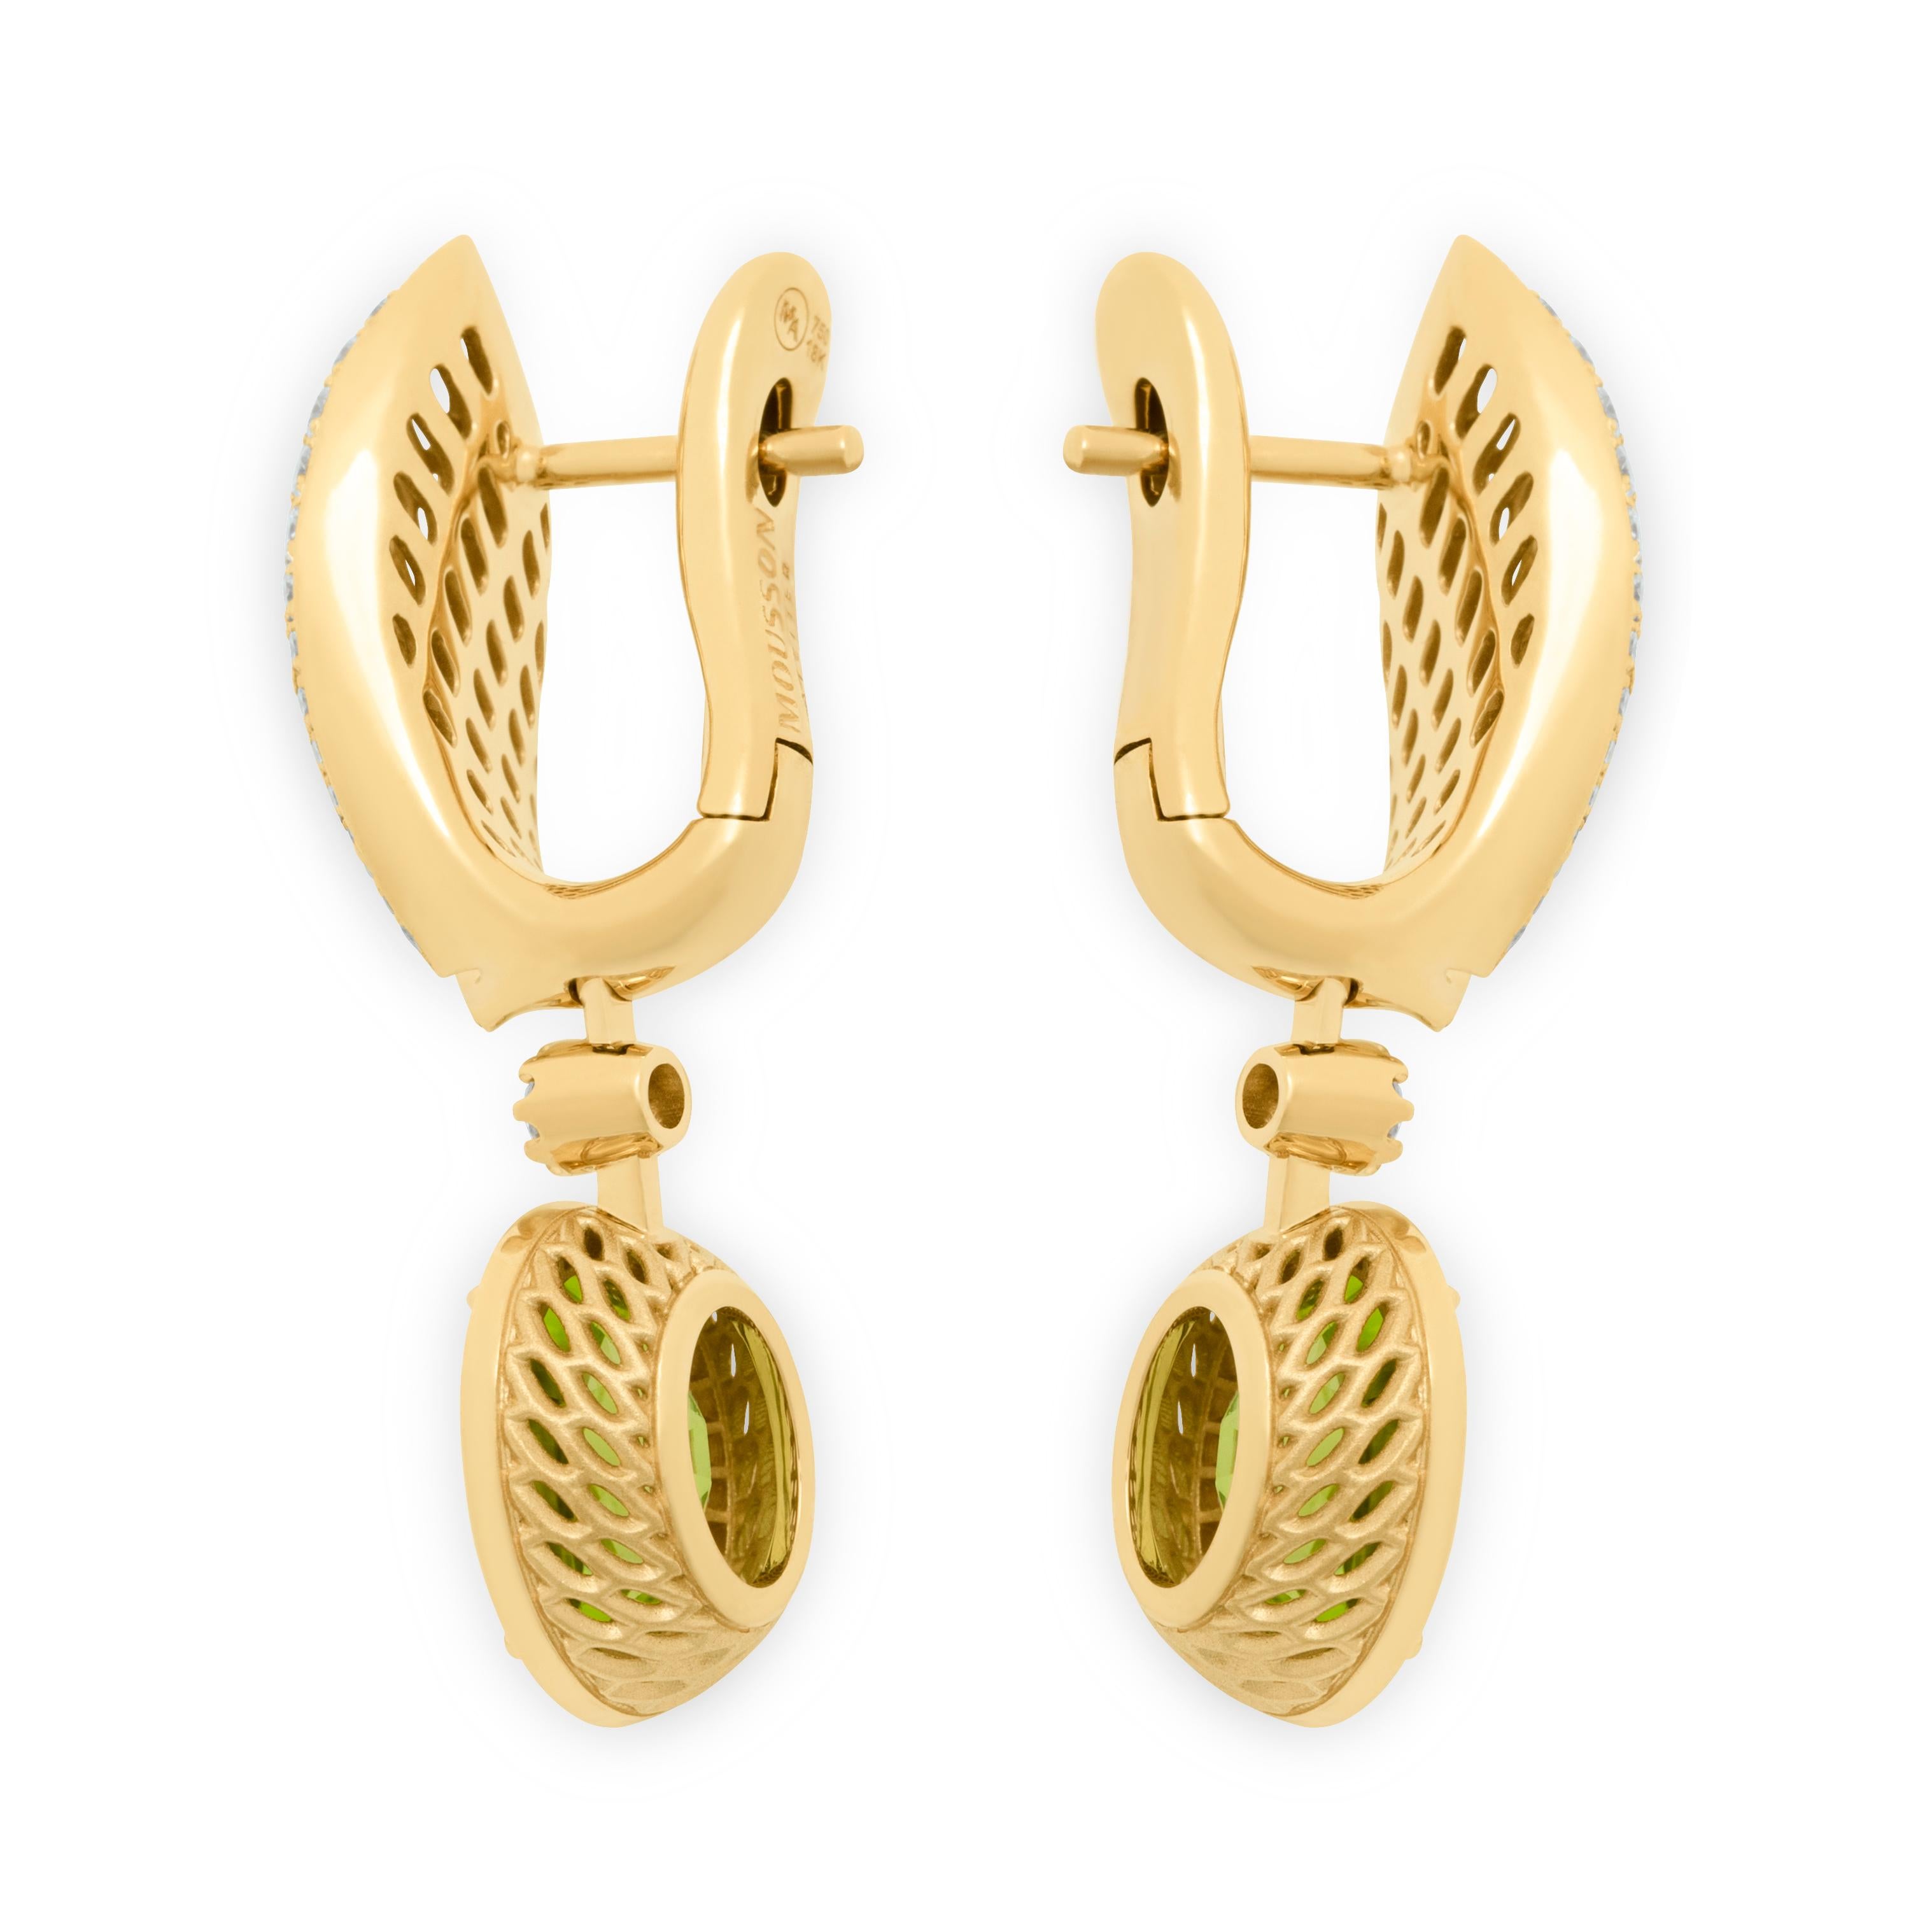 18 Karat Gelbgold-Ohrringe mit Peridot 4,03 Karat Diamanten, neu
Wir haben eine Serie von neuen Ohrringen mit der gleichen IDEA, aber mit anderen Details veröffentlicht. Wir präsentieren Ohrringe aus 18 Karat Gelbgold, die in Verbindung mit zwei